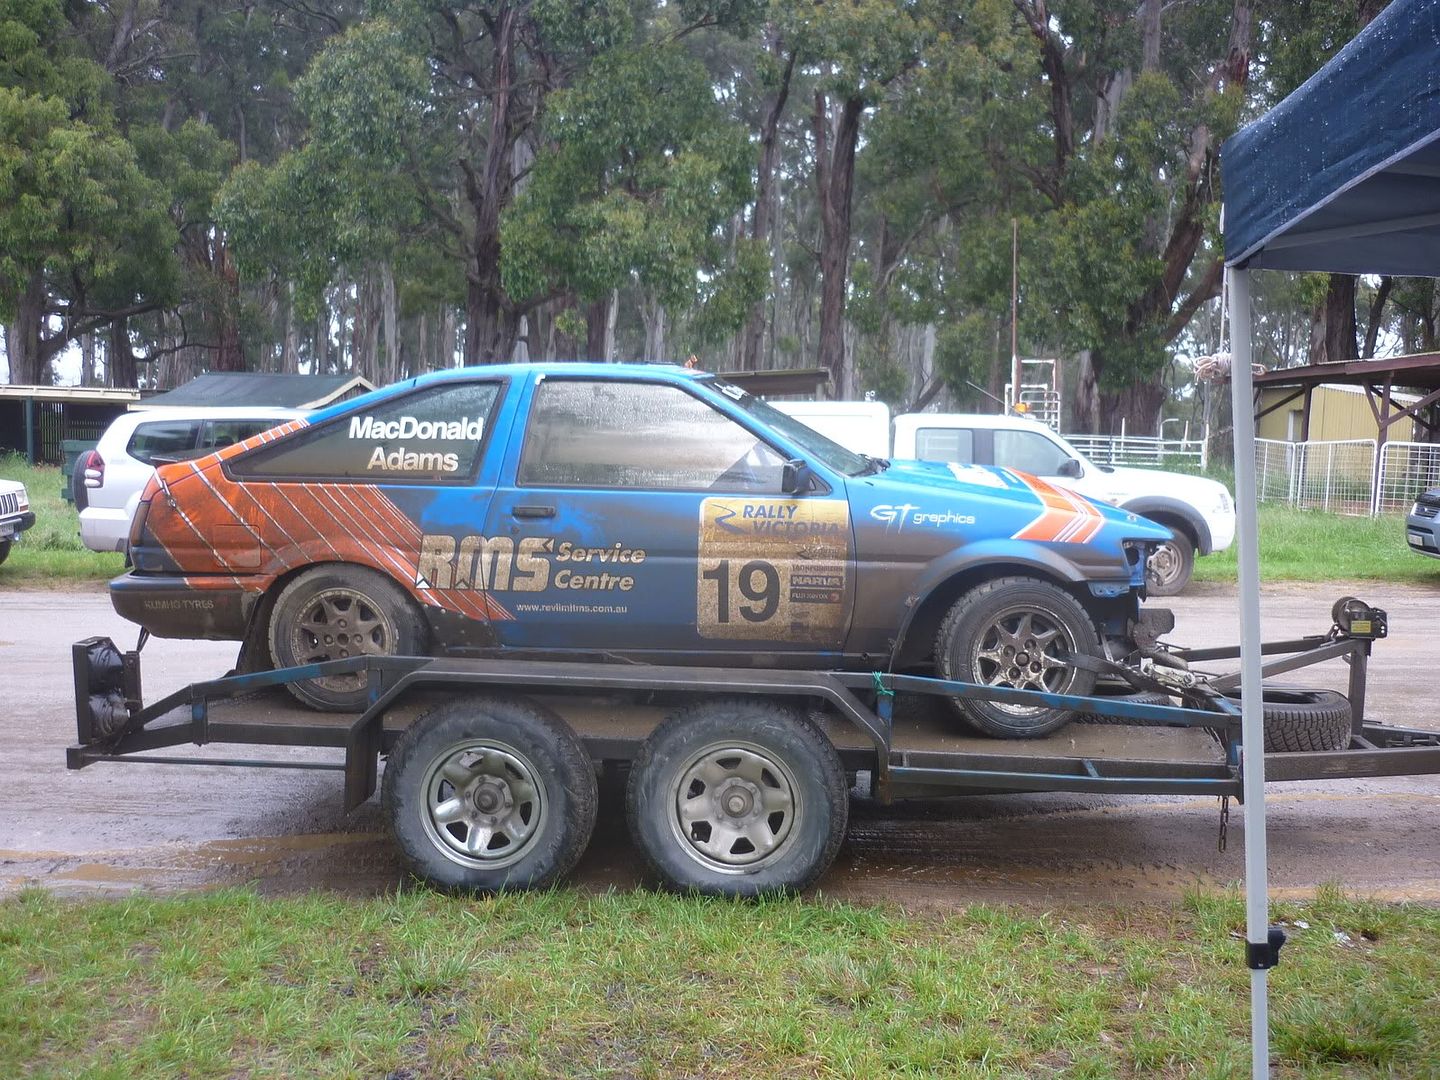 [Image: AEU86 AE86 - Aussie ae86 rally car]